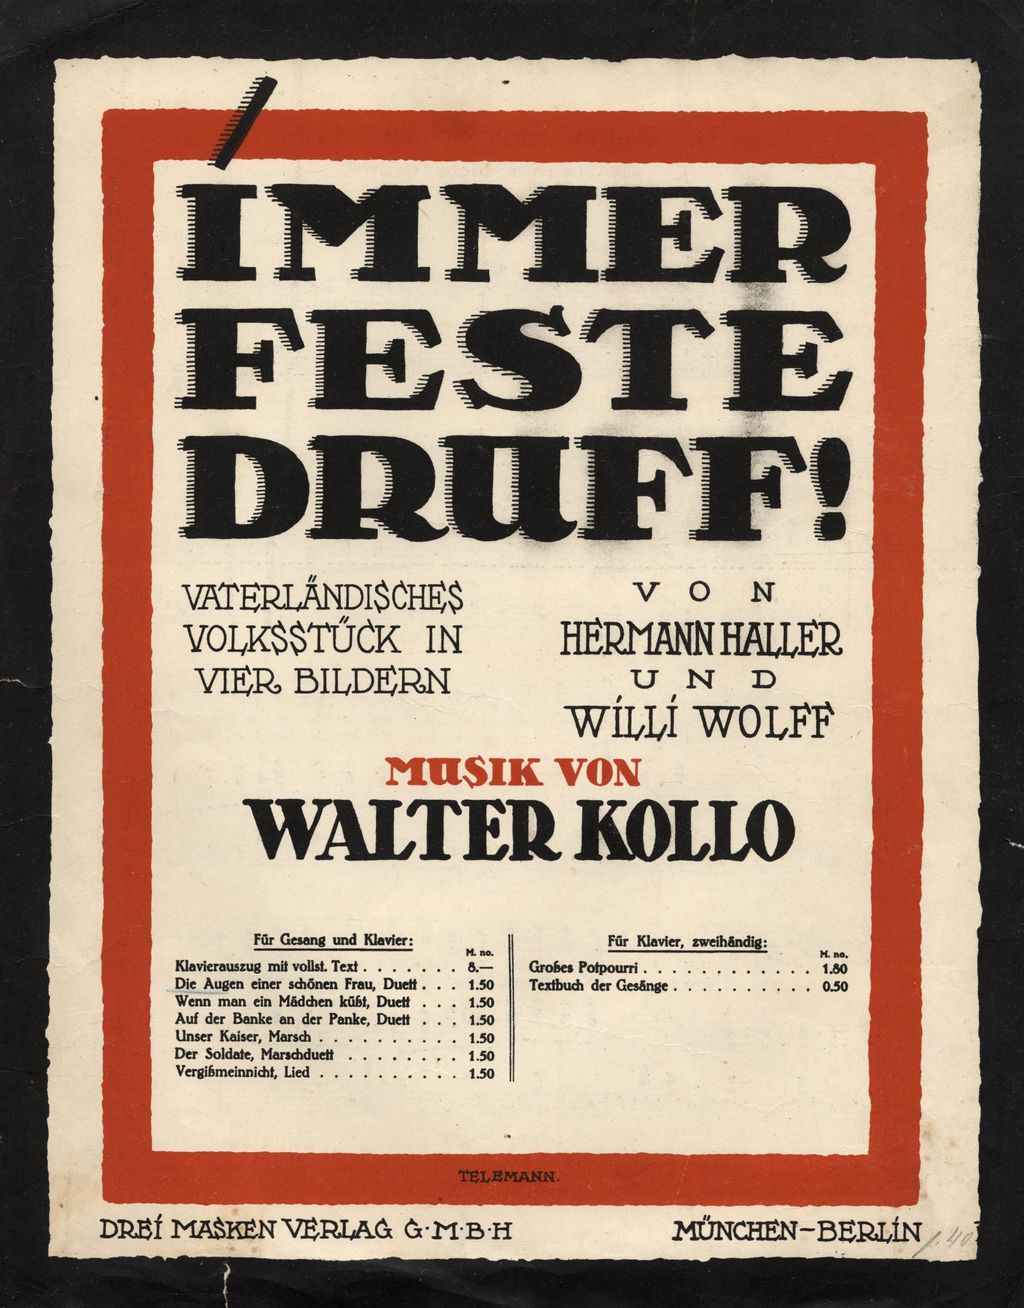 Notenblatt aus der Kriegsoperette "Immer feste druff!", 1914